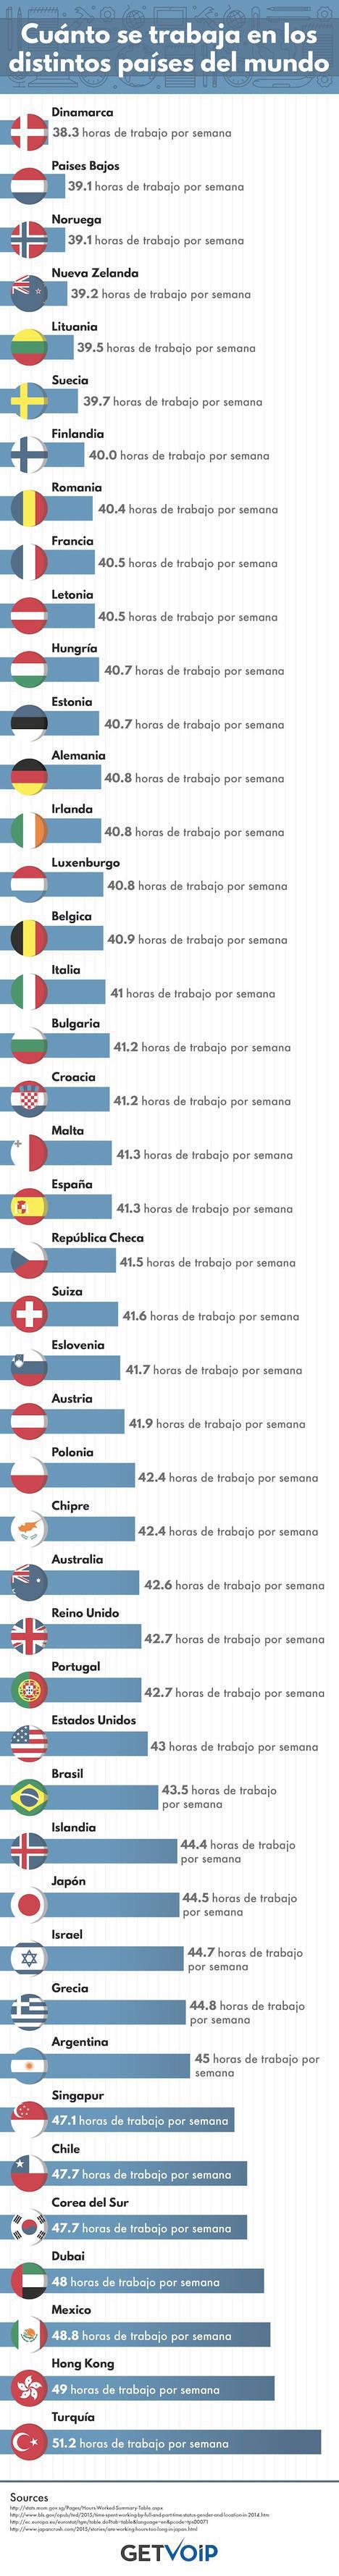 ¿Cuánto se trabaja en los distintos países del mundo?